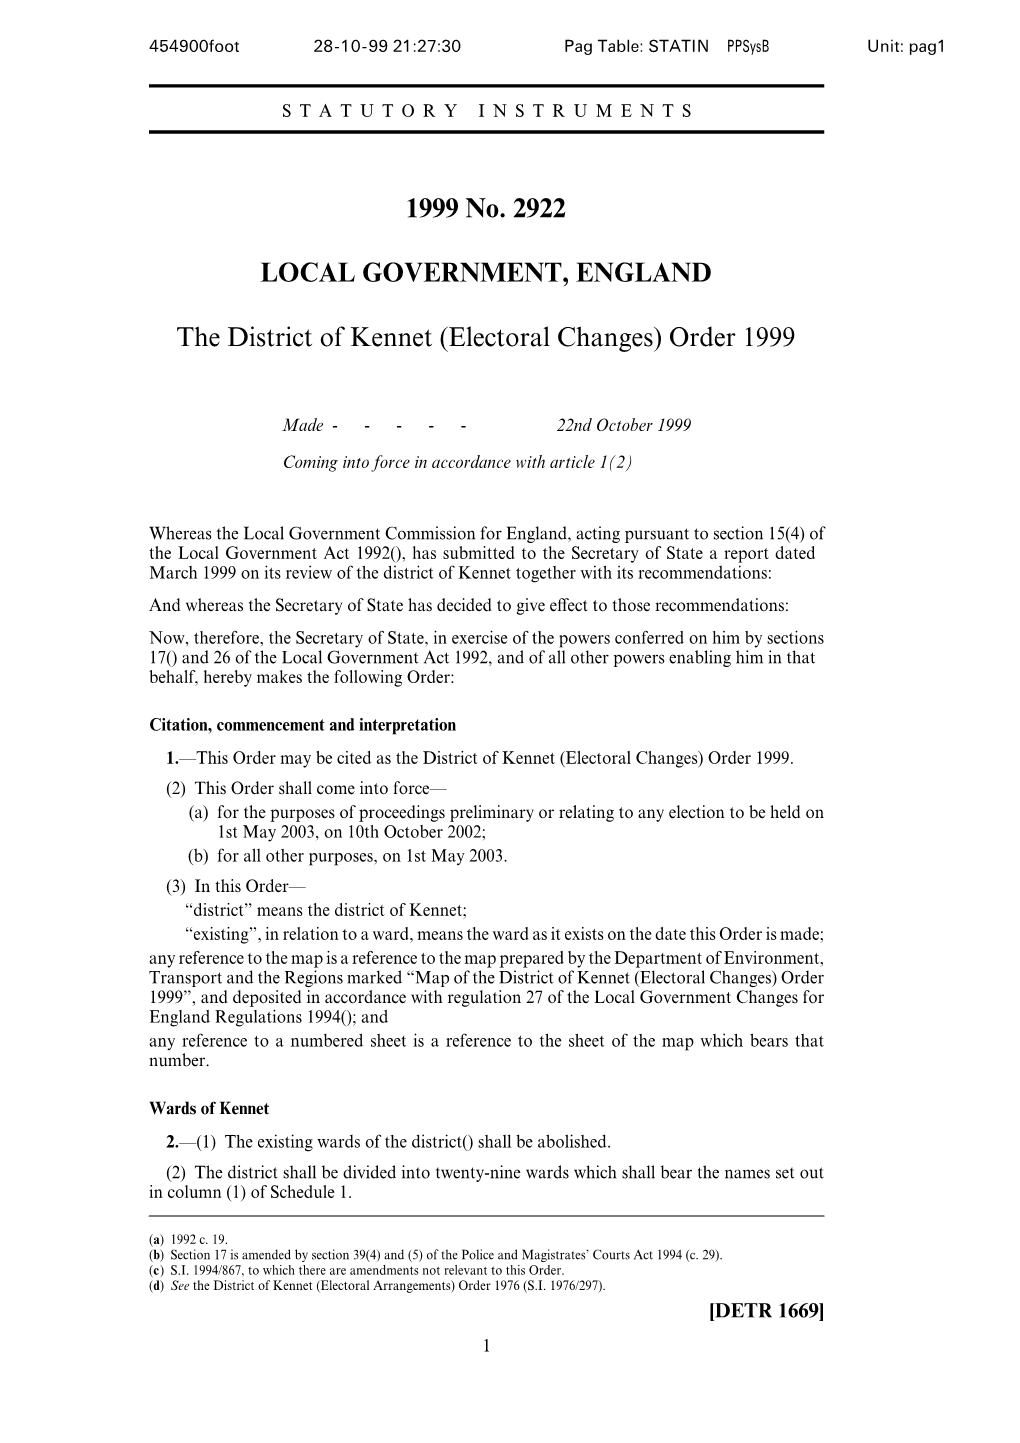 1999 No. 2922 LOCAL GOVERNMENT, ENGLAND The